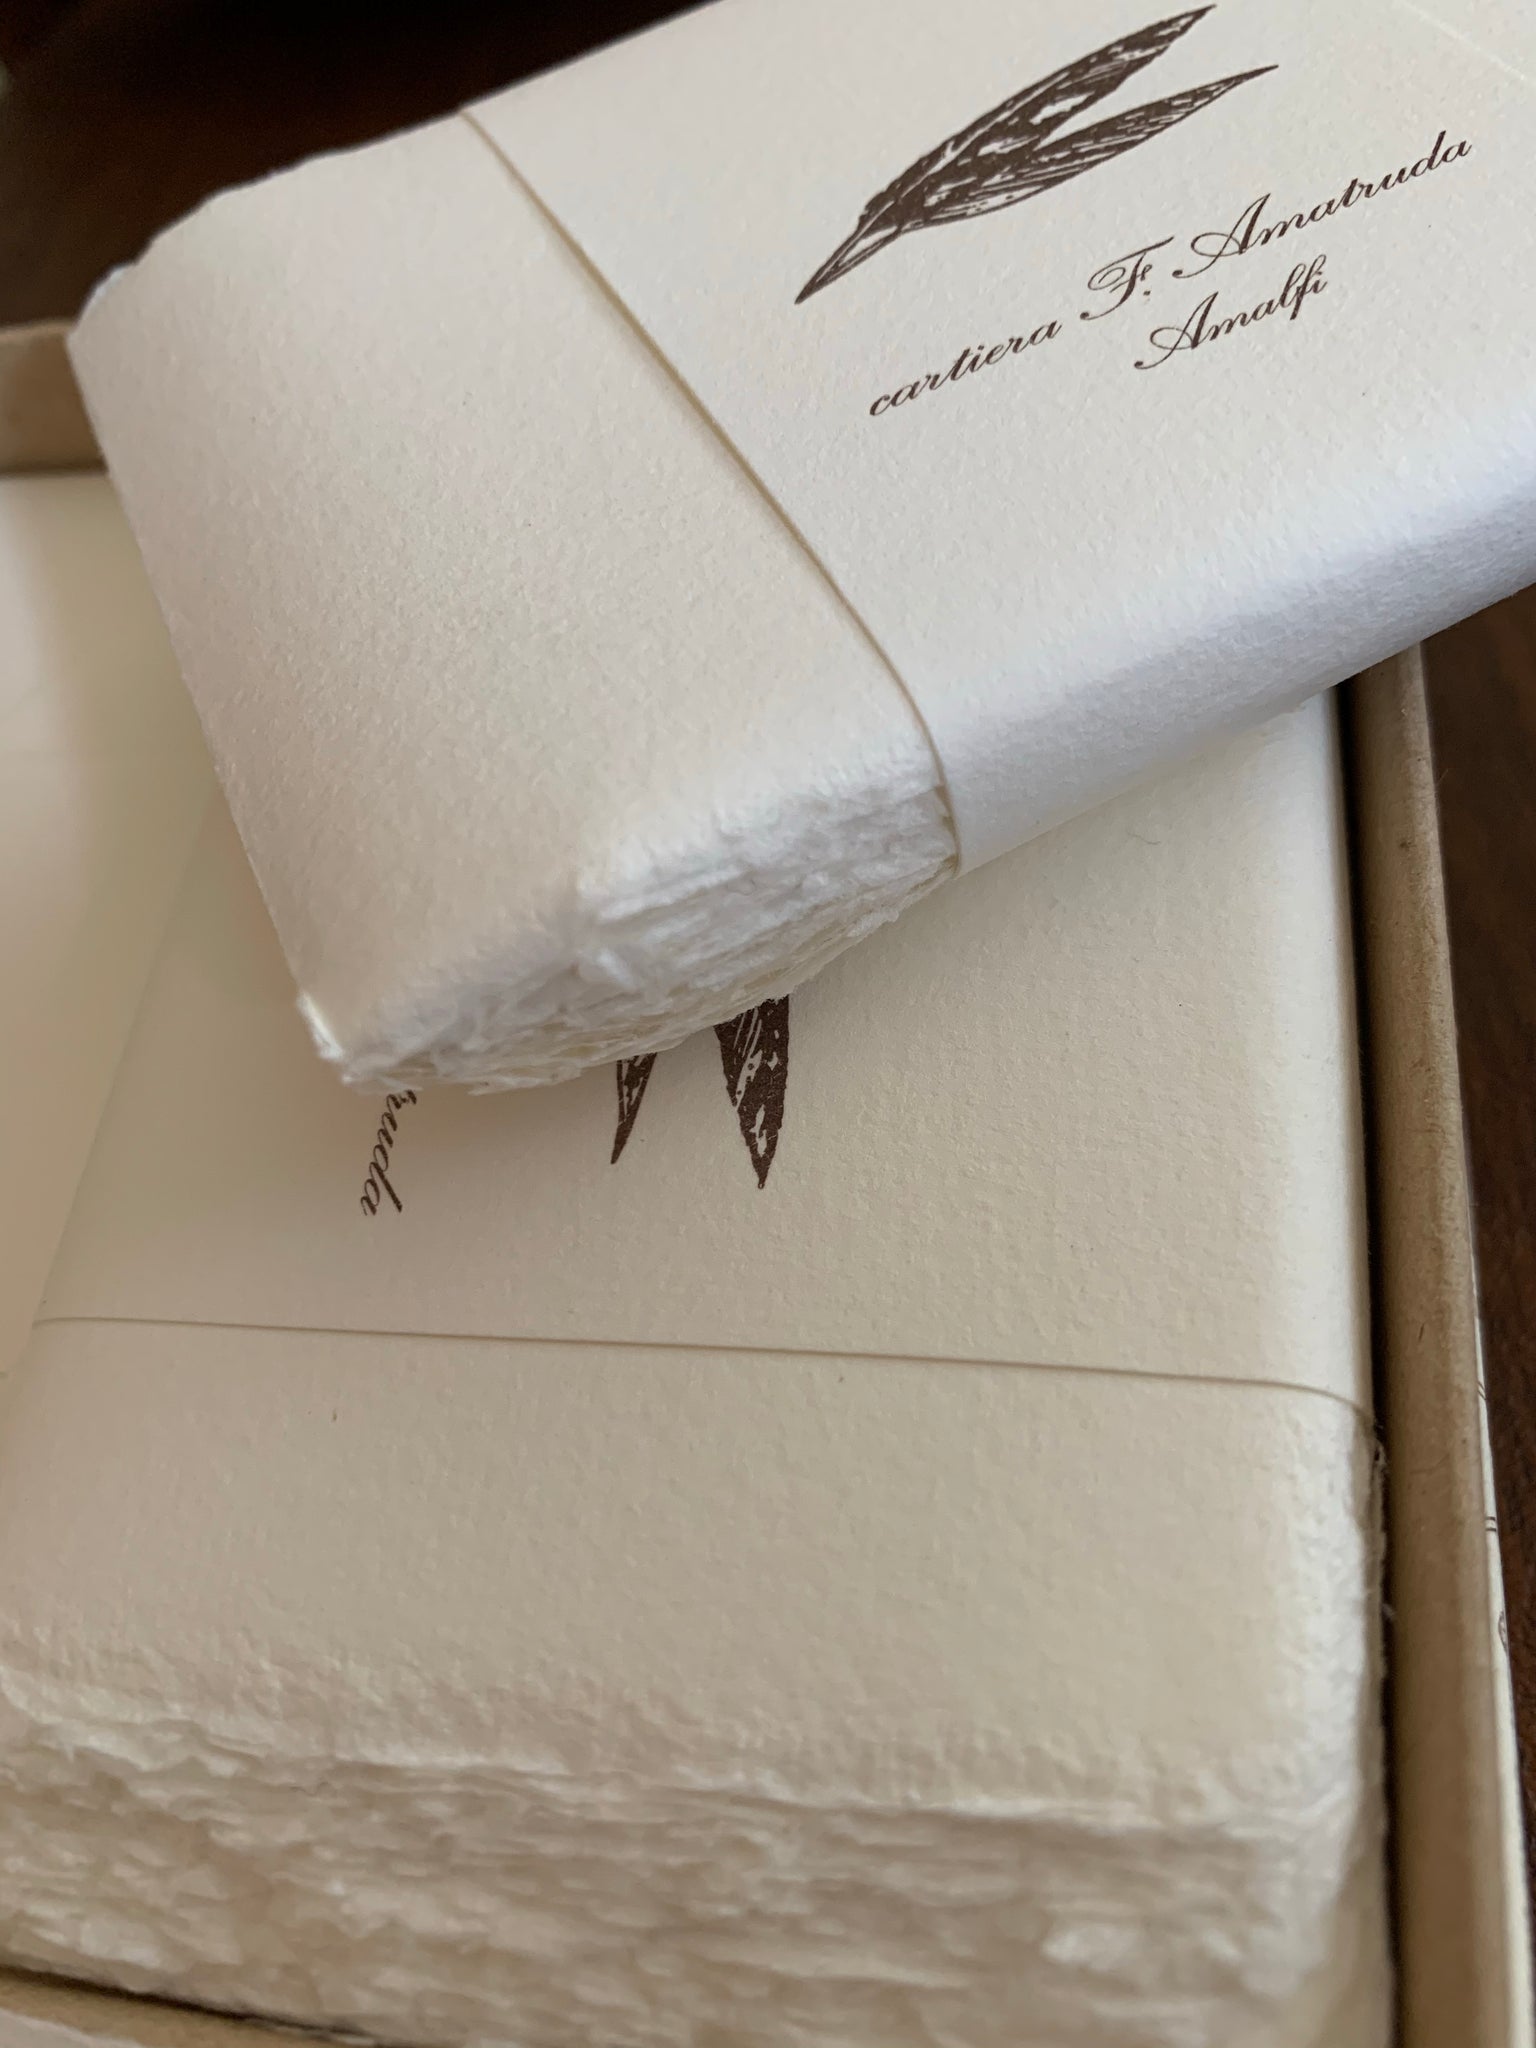 Amalfi Box of 50 Folded Cards/Envelopes 4 1/4" x 2 3/4" by Amatruda